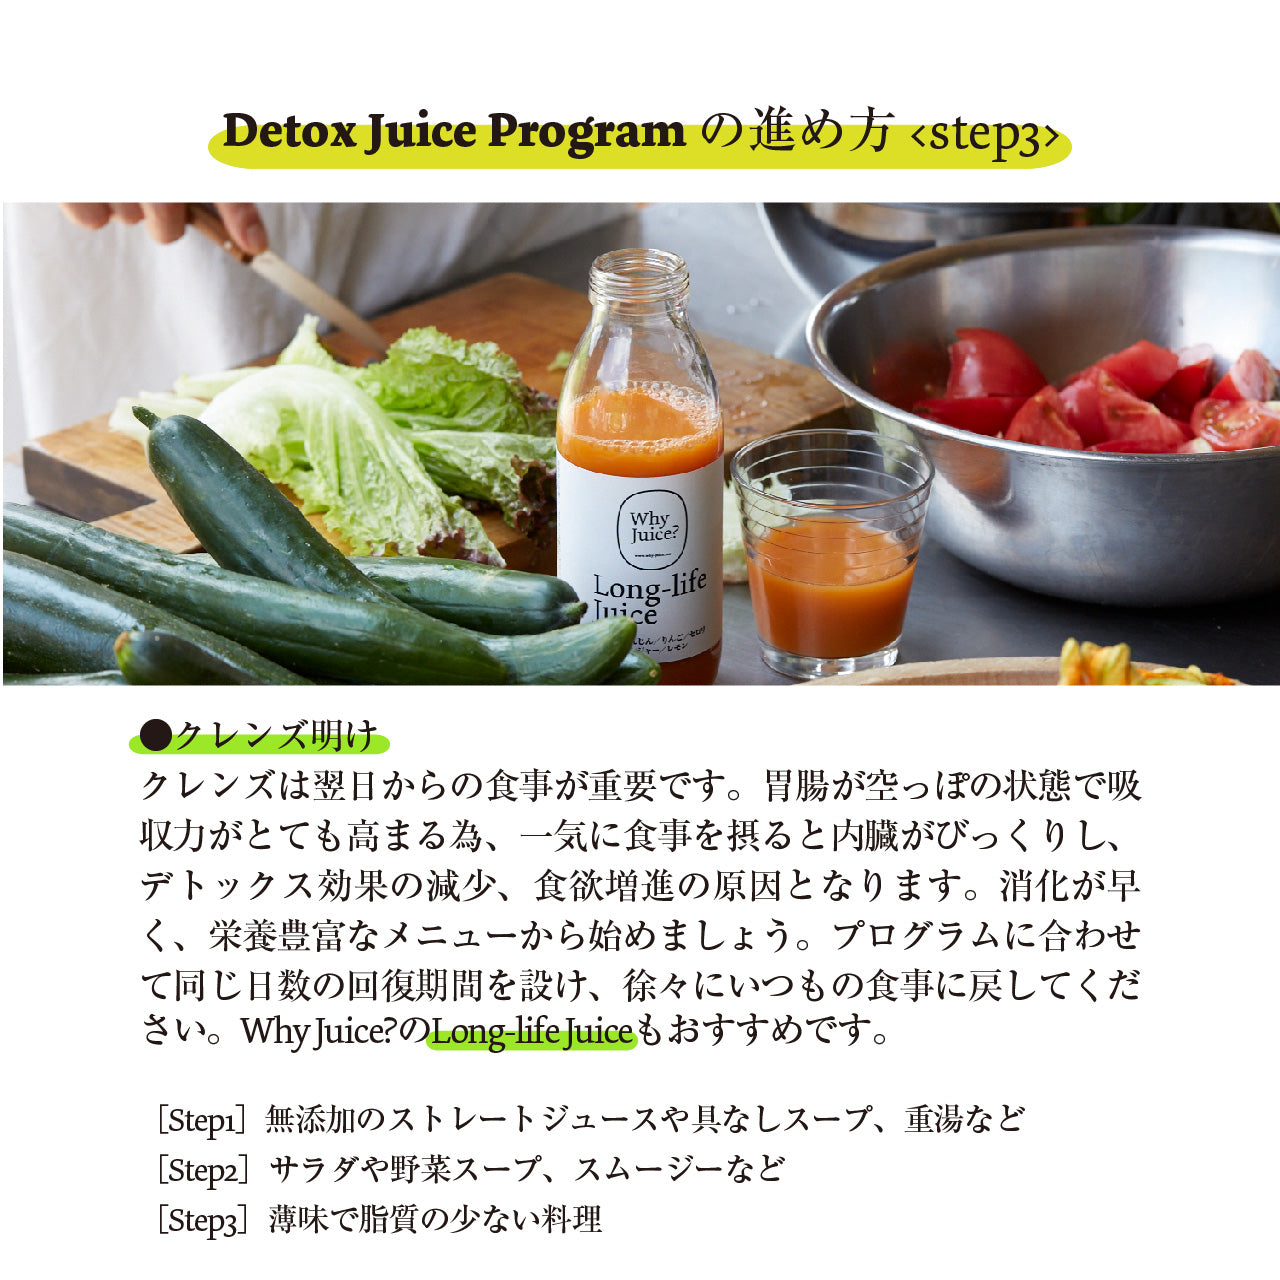 【クレンズ中のミネラル補給に「昔ながらの梅干し」と回復食用「滋養粥」付き】Frozen Detox Juice Program 【Full-day 